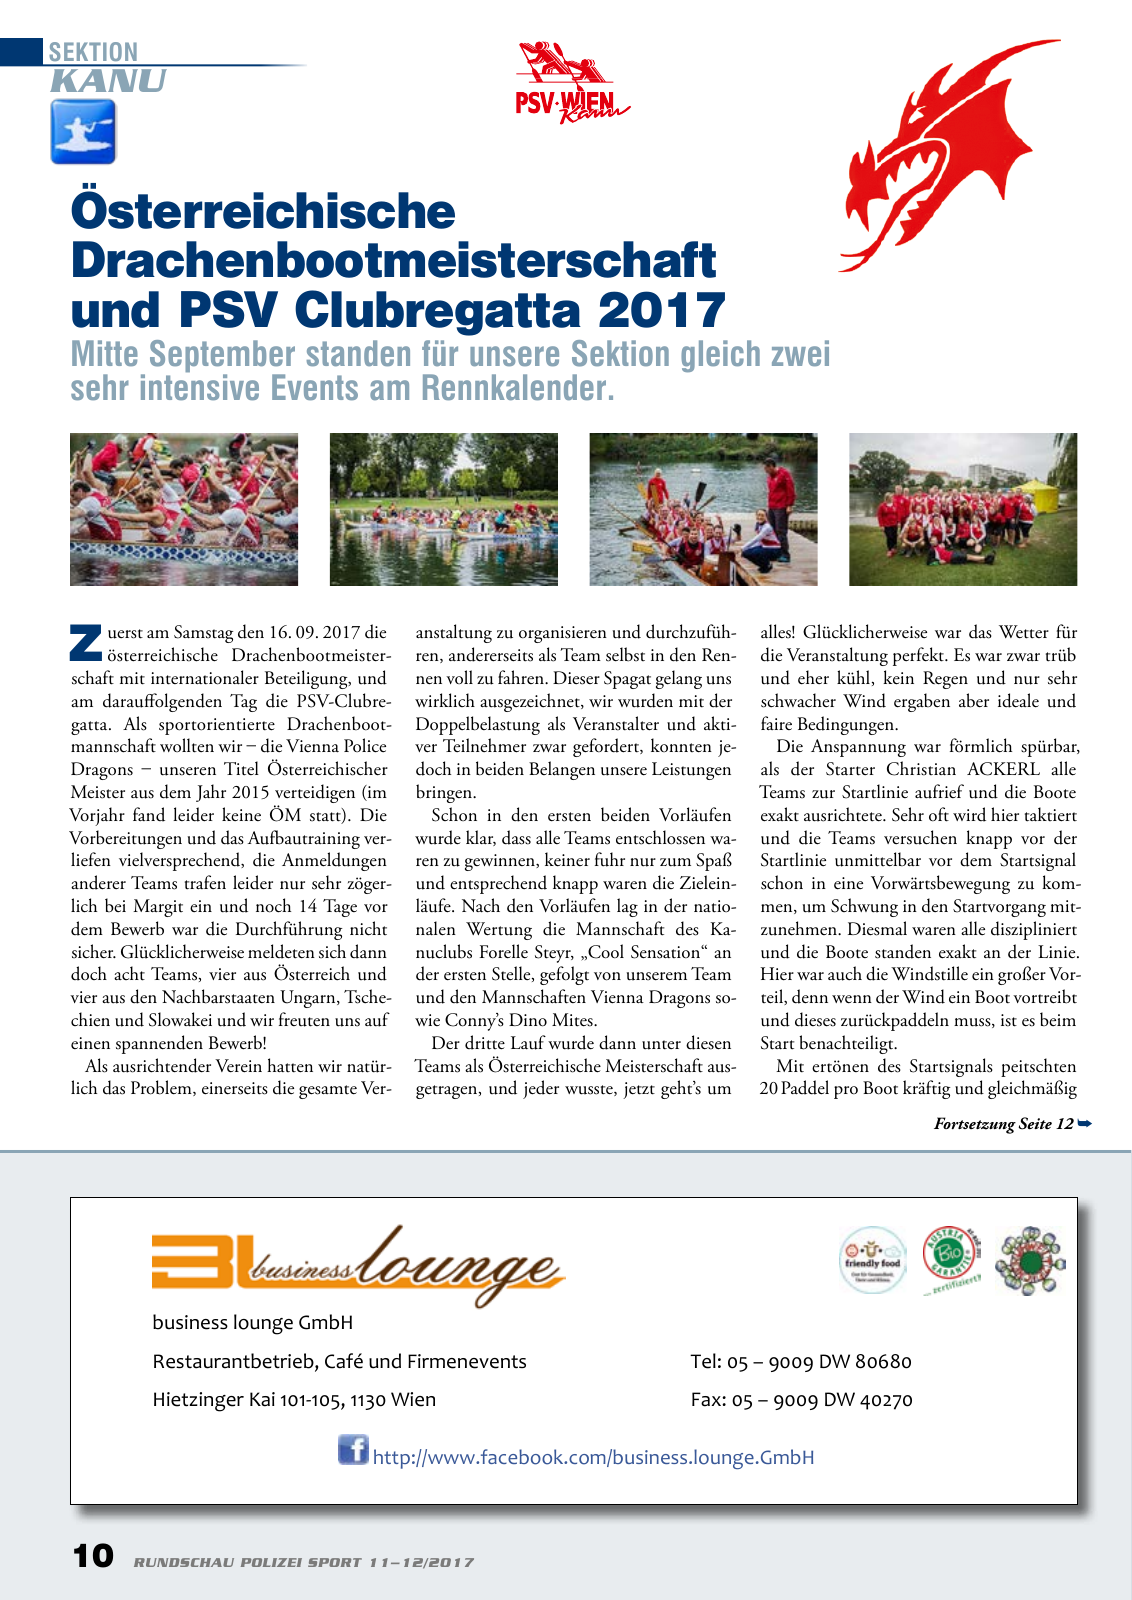 Vorschau Rundschau Polizei Sport 11-12/2017 Seite 10